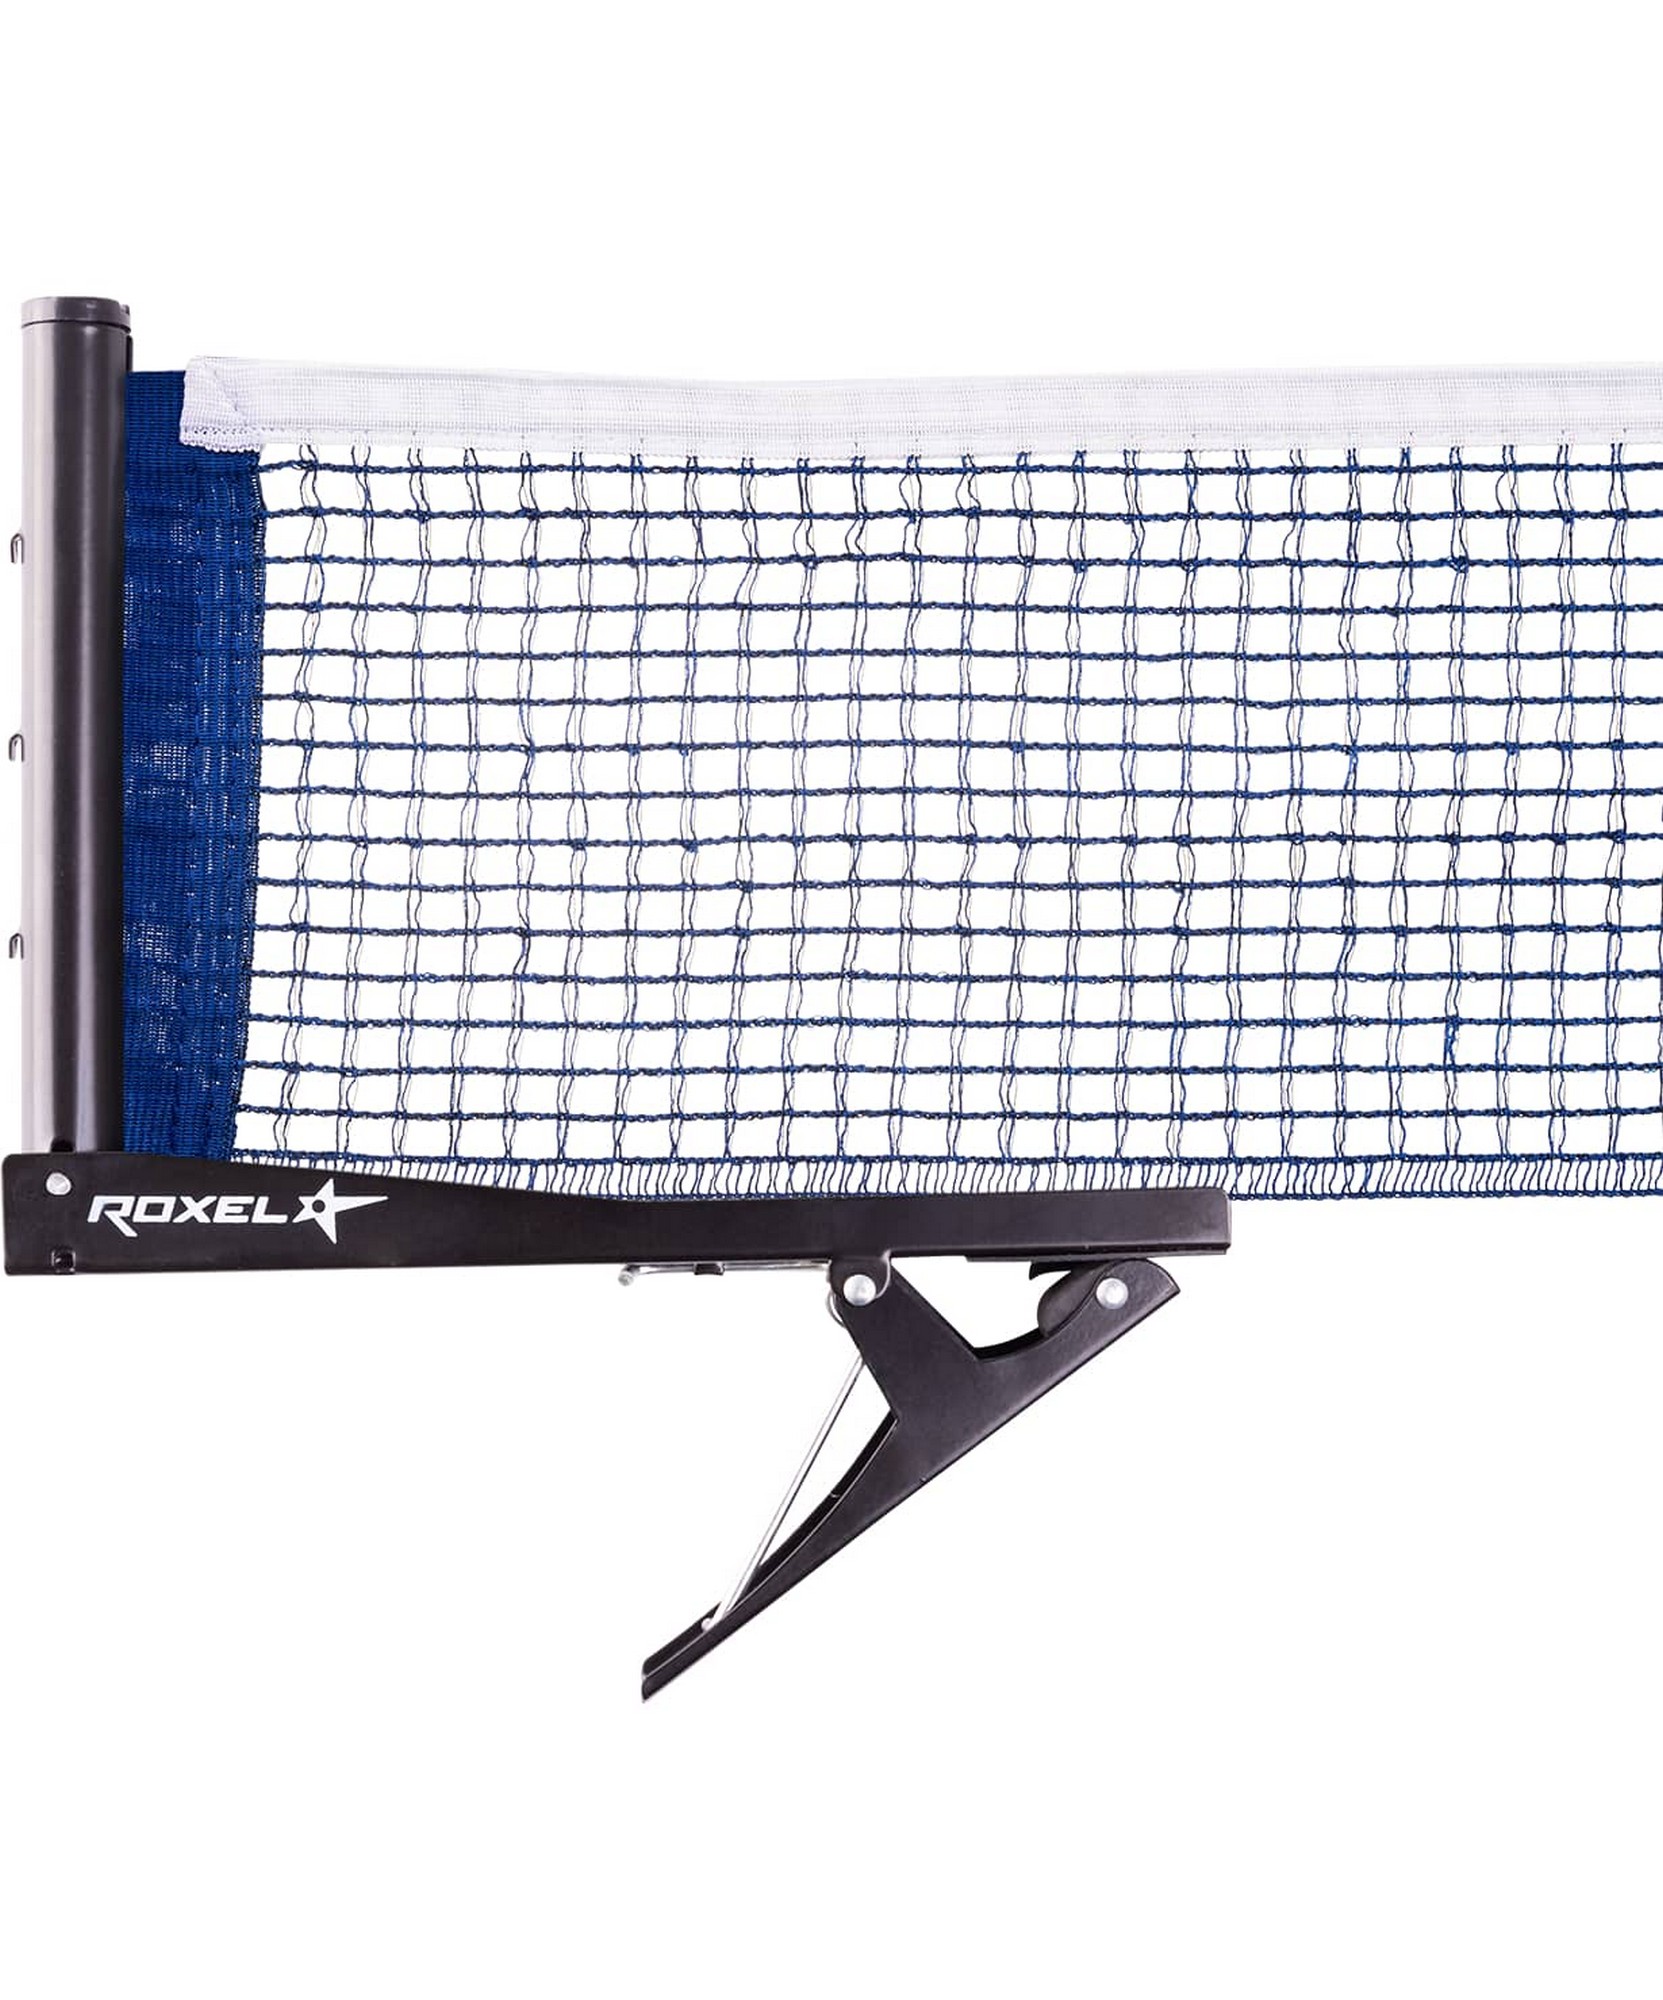 Сетка для настольного тенниса Roxel Clip-on, на клипсе,  - купить со скидкой